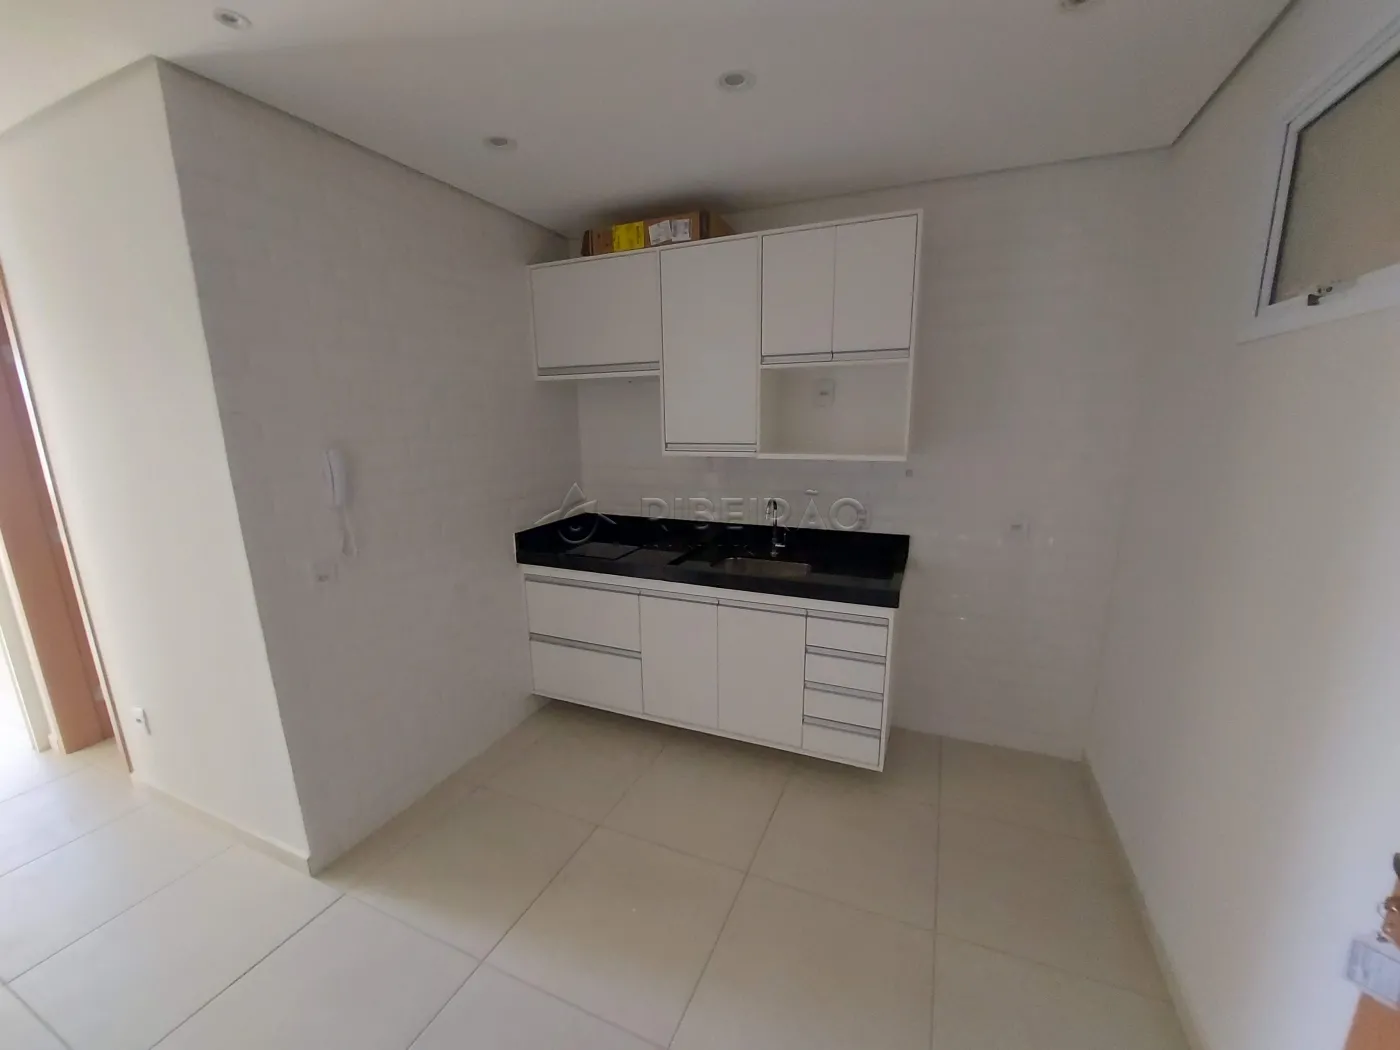 Alugar Apartamento / Flat / Loft / Kitnet em Ribeirão Preto R$ 1.500,00 - Foto 2